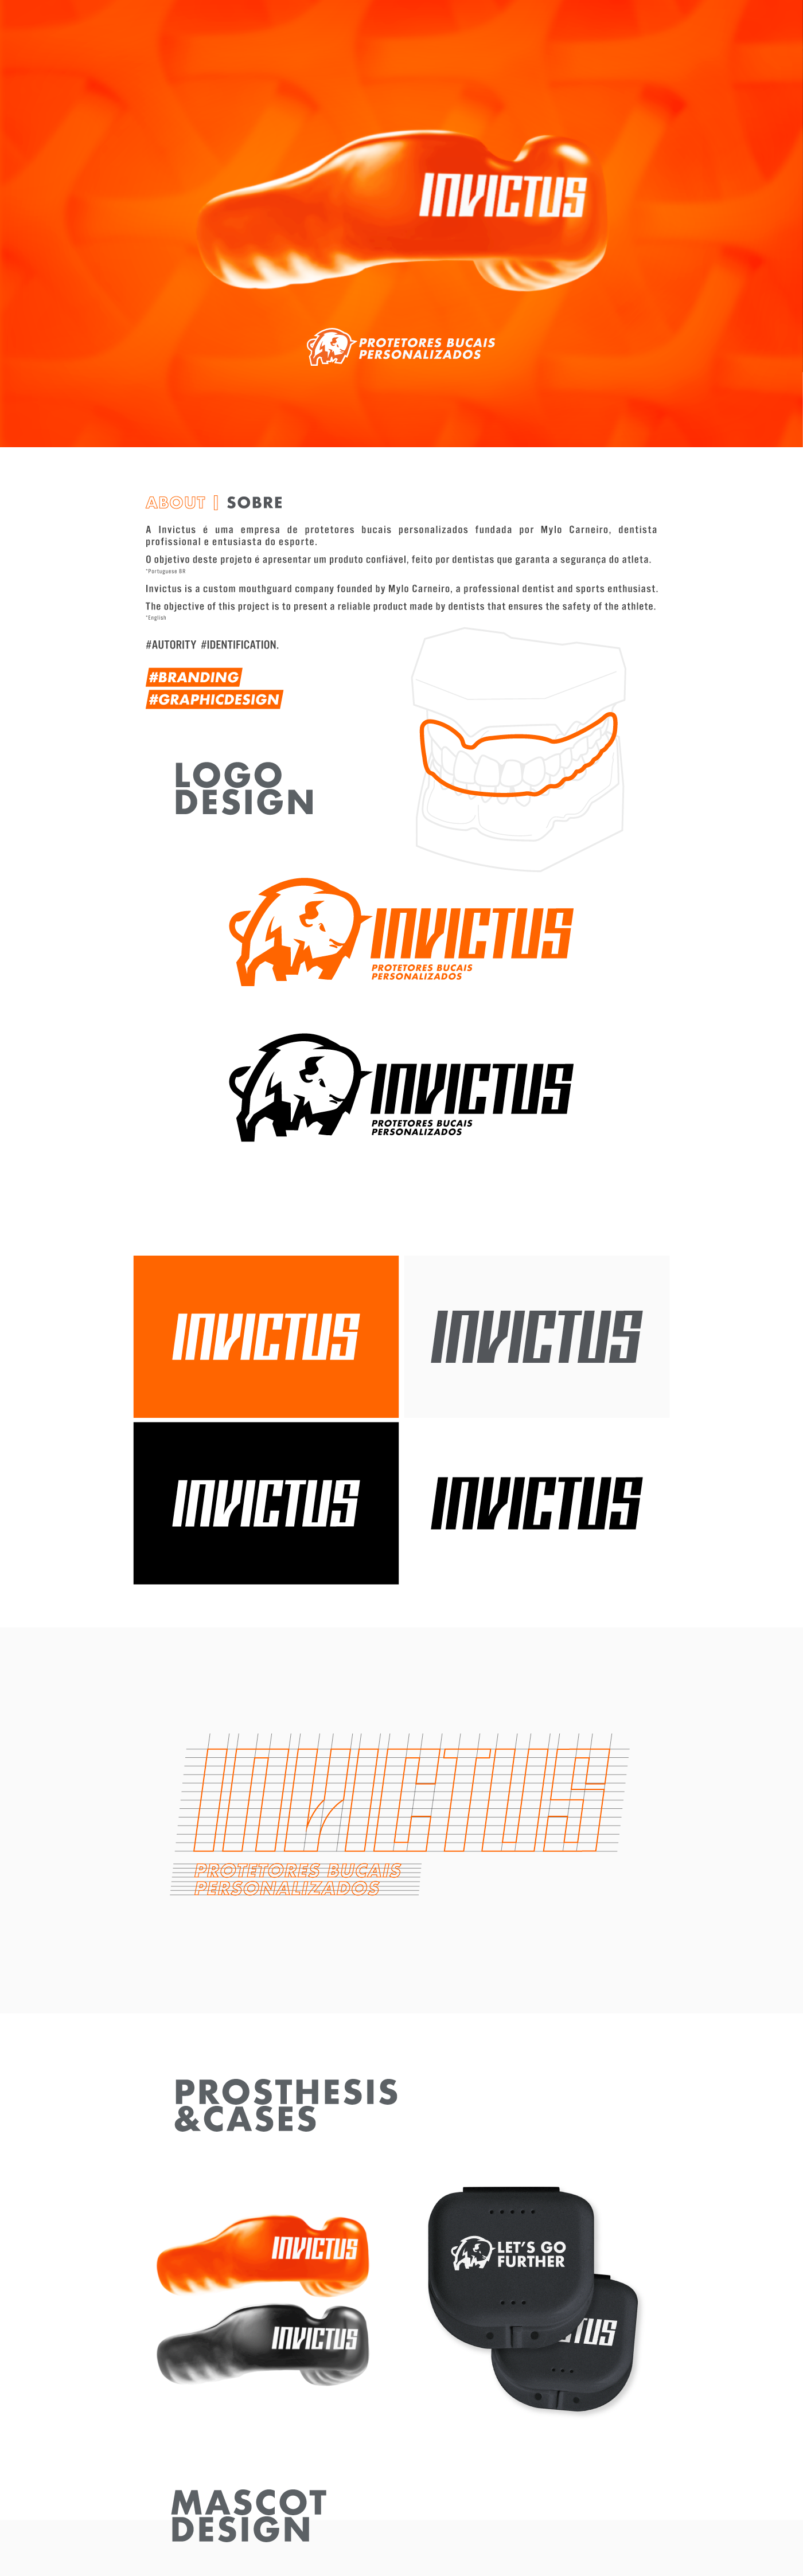 Mouthguard sport brand Invictus Mascot bison logo